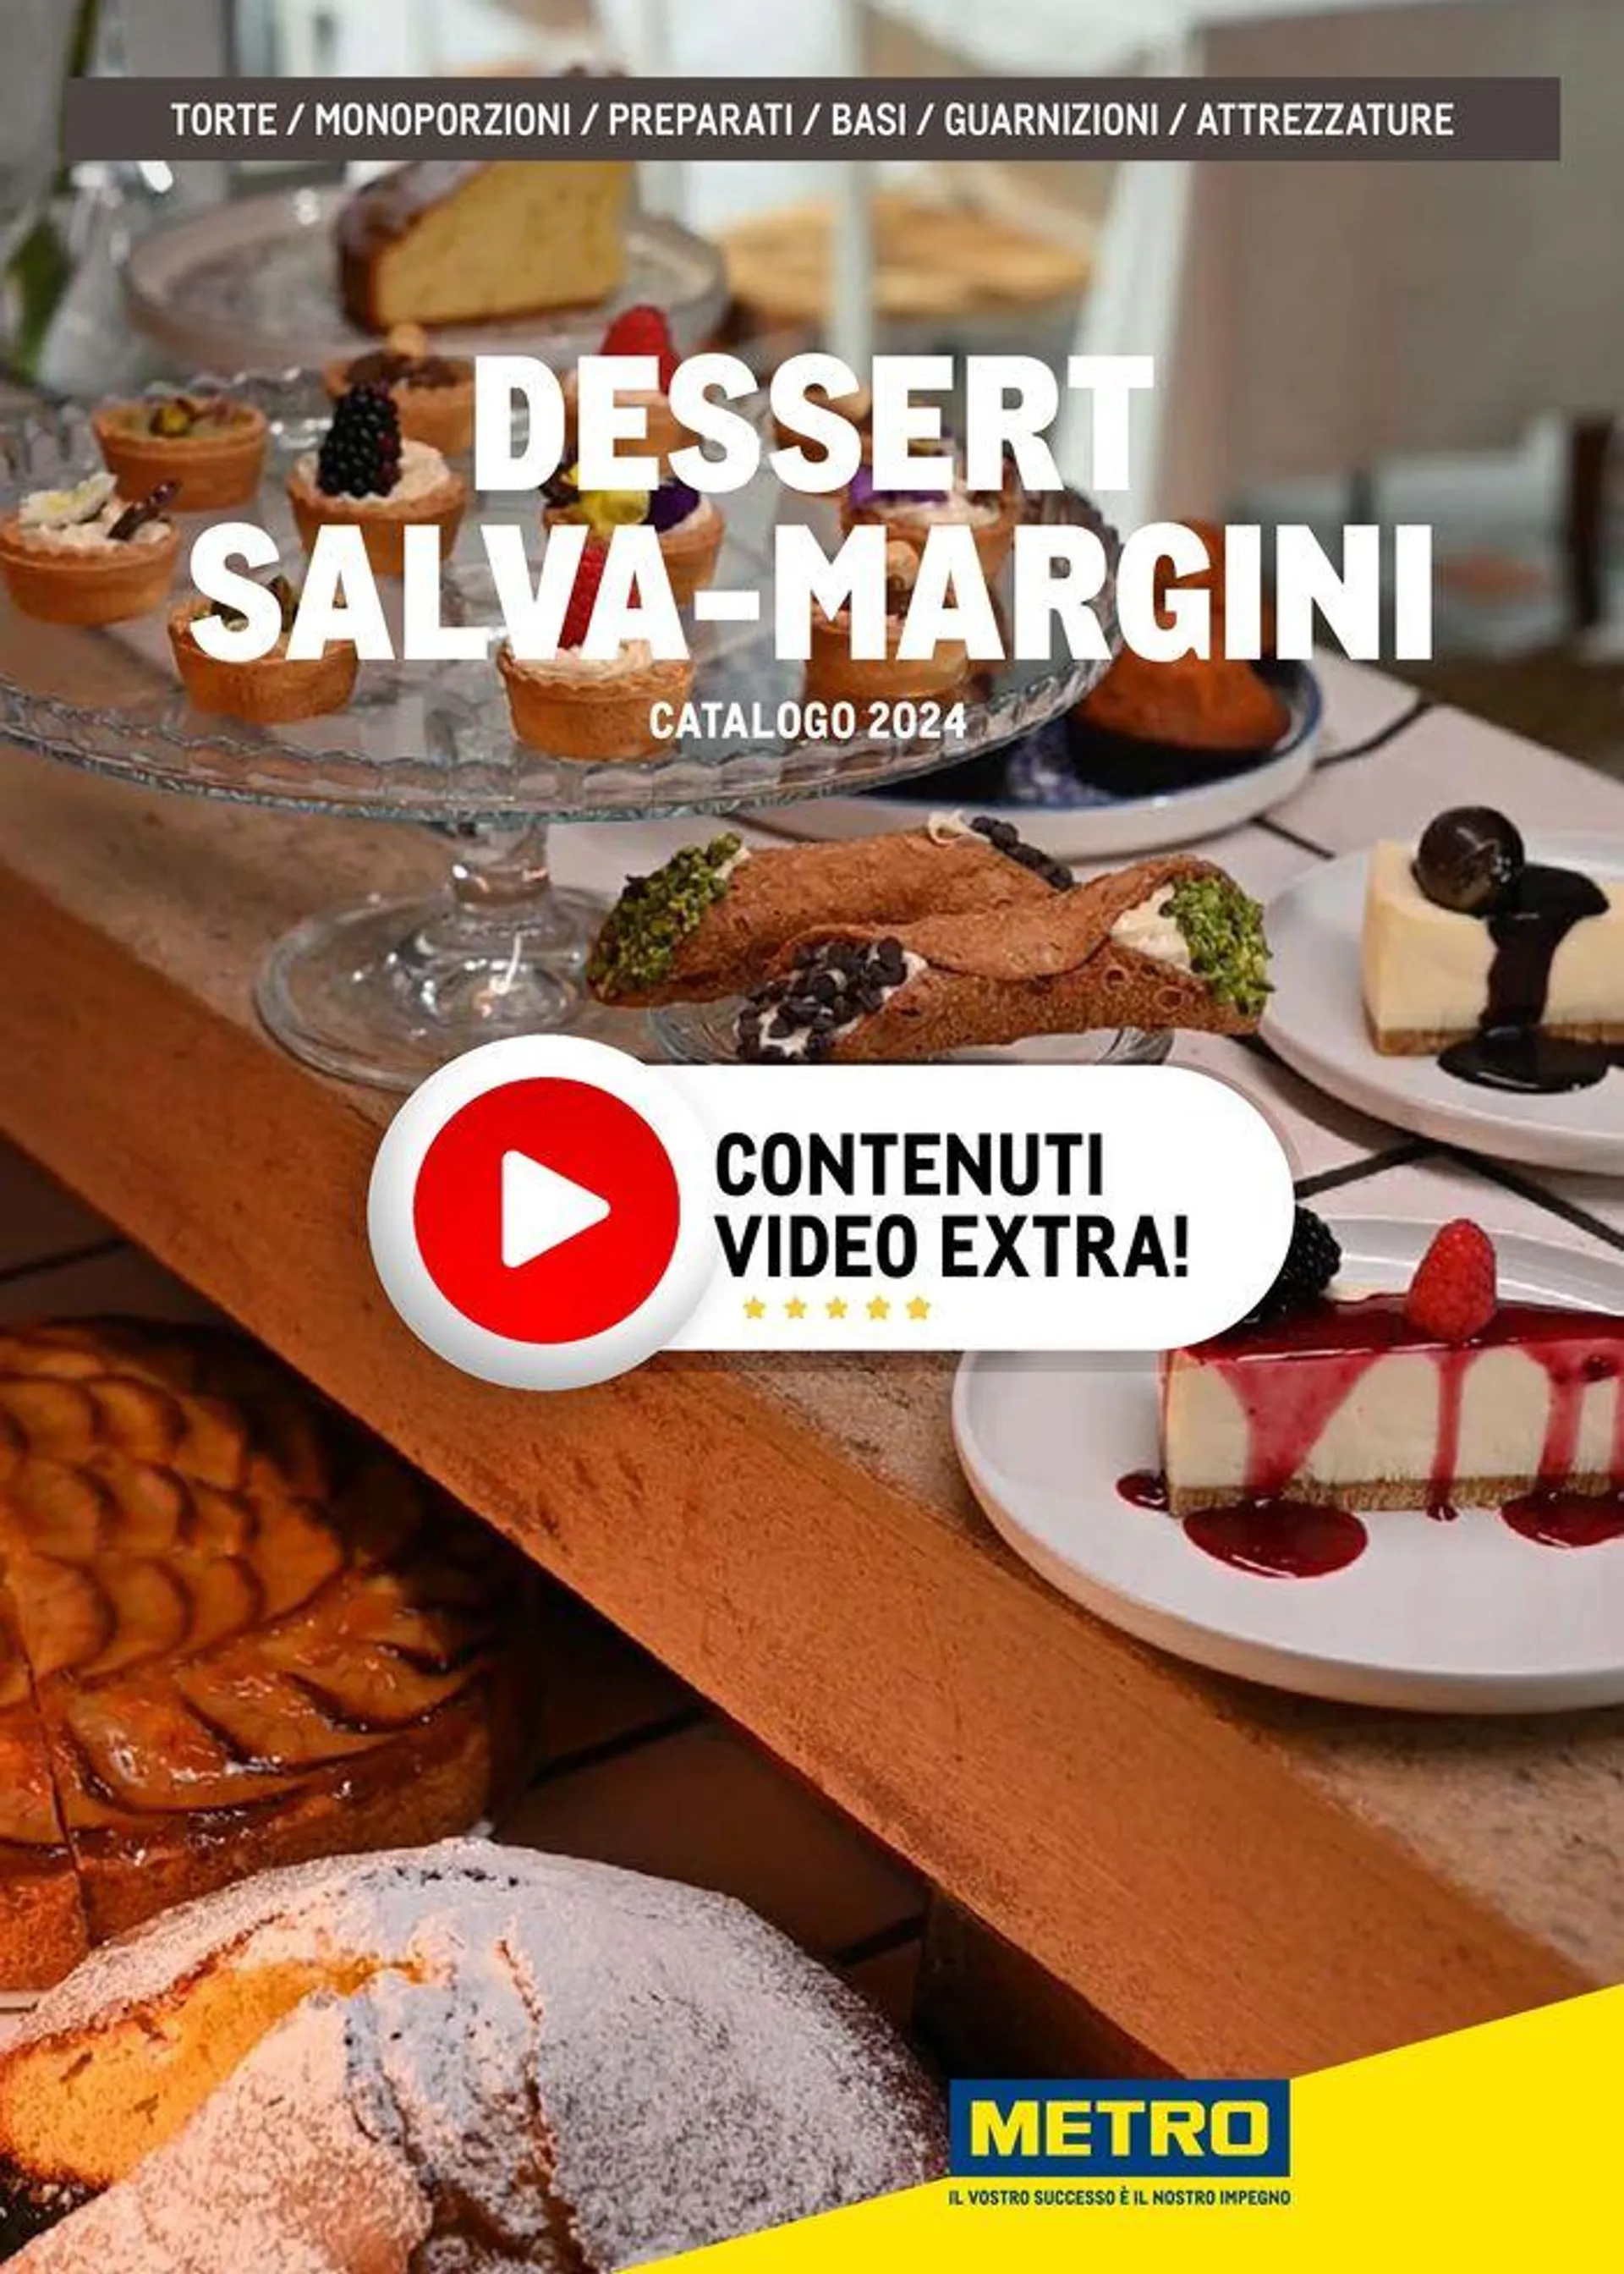 Dessert Salva-Margini - 1